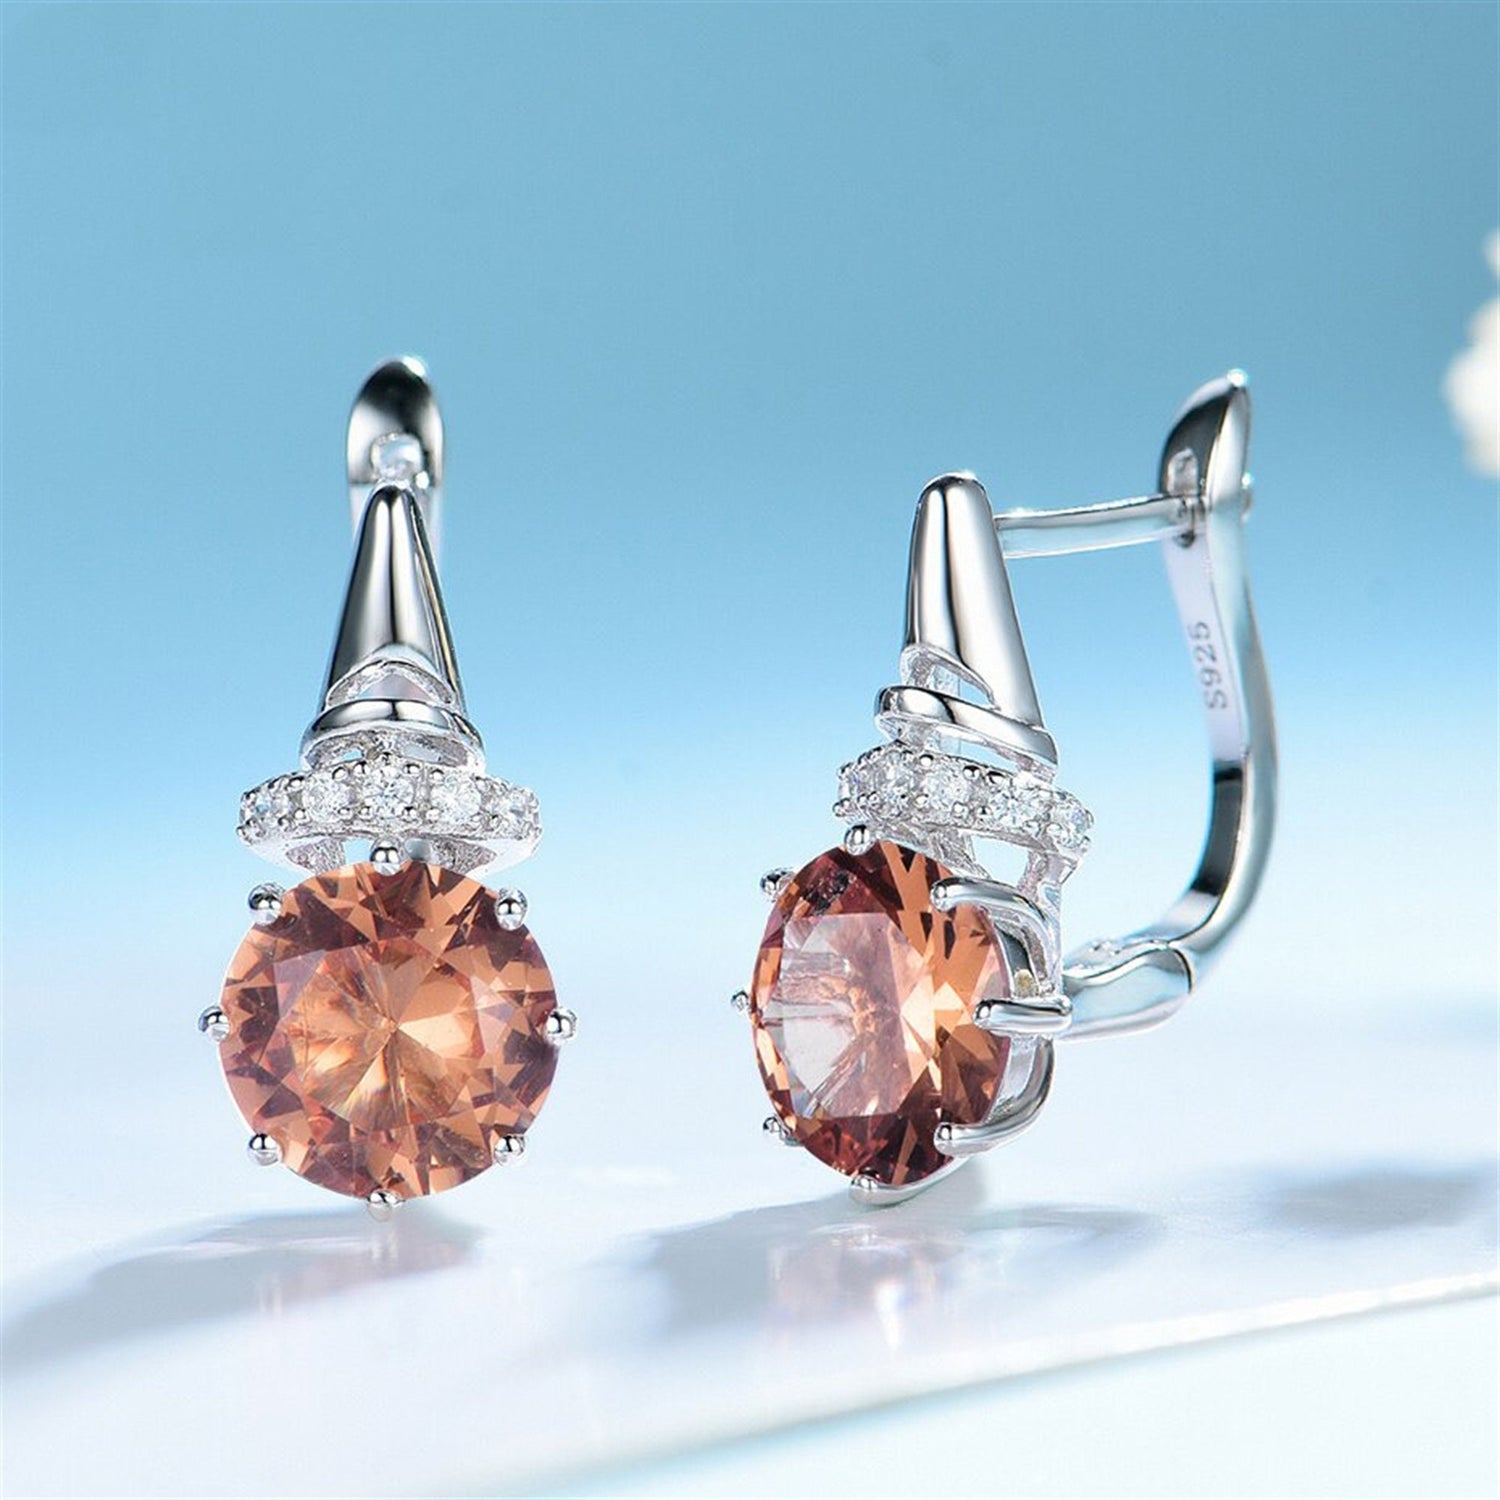 Diaspore Gemstone Earrings, Zultanite Earrings, Solid 925 Sterling Silver, Color Change Crystal Earrings, Rhodium Plating